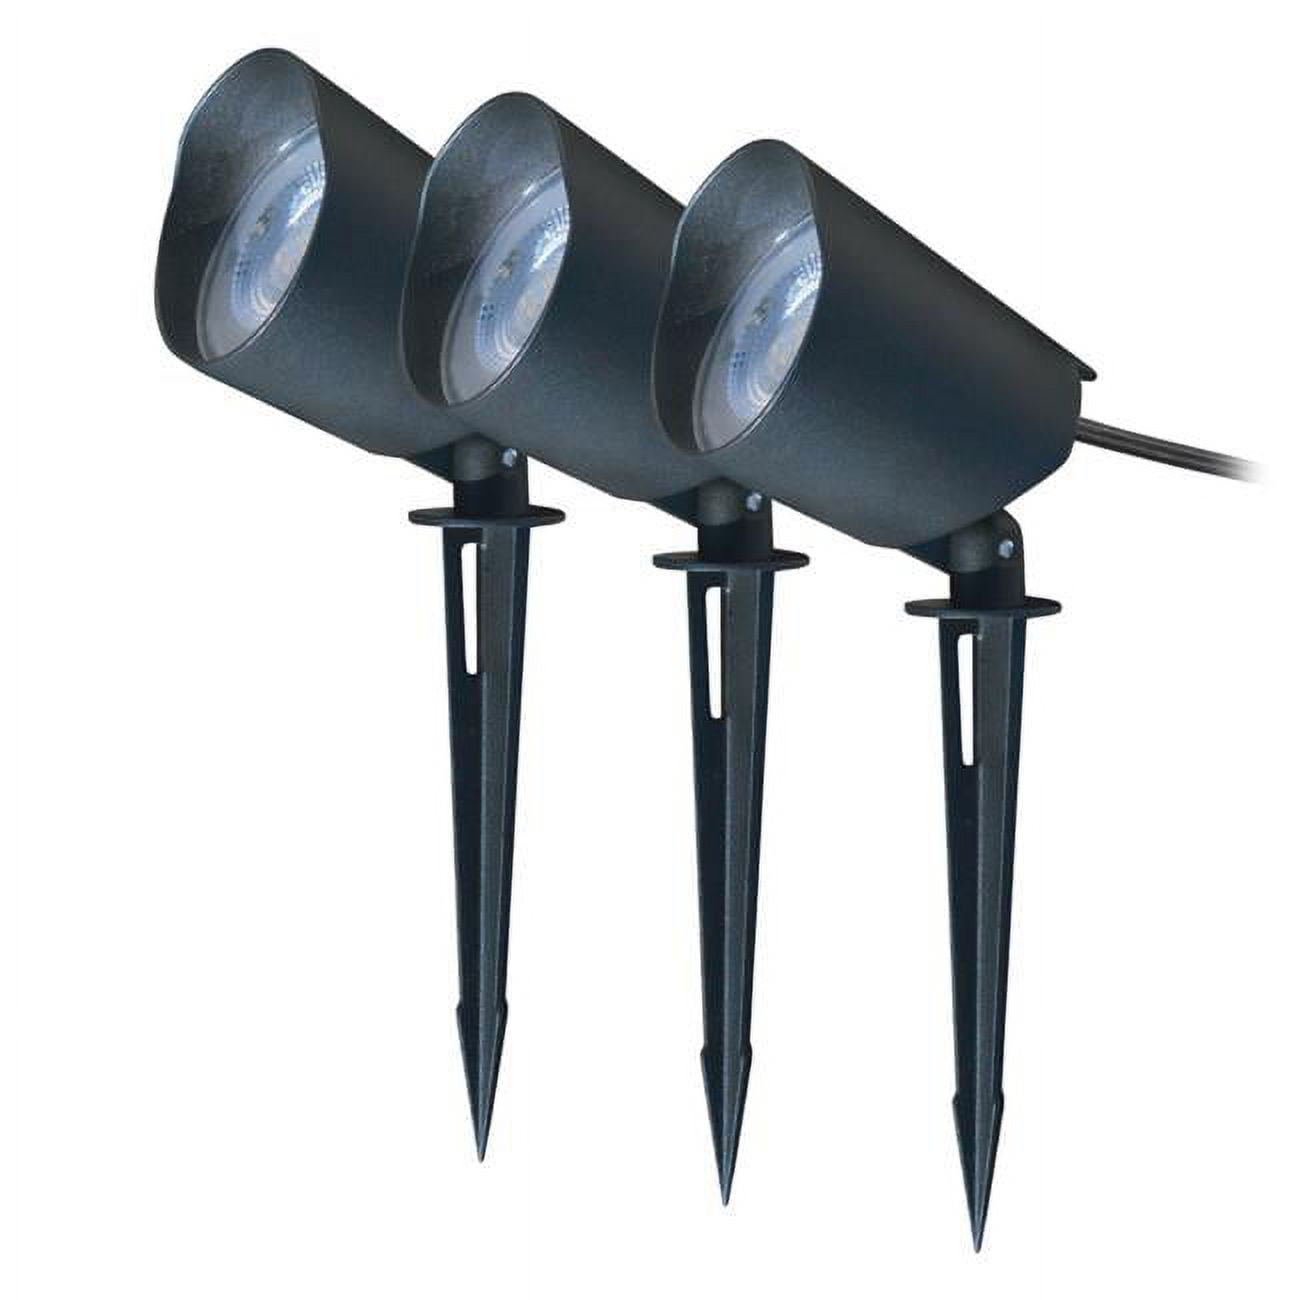 3901154 9 Watt Black Plug In Led Pathway Light & Spot Light Kit, Pack Of 3